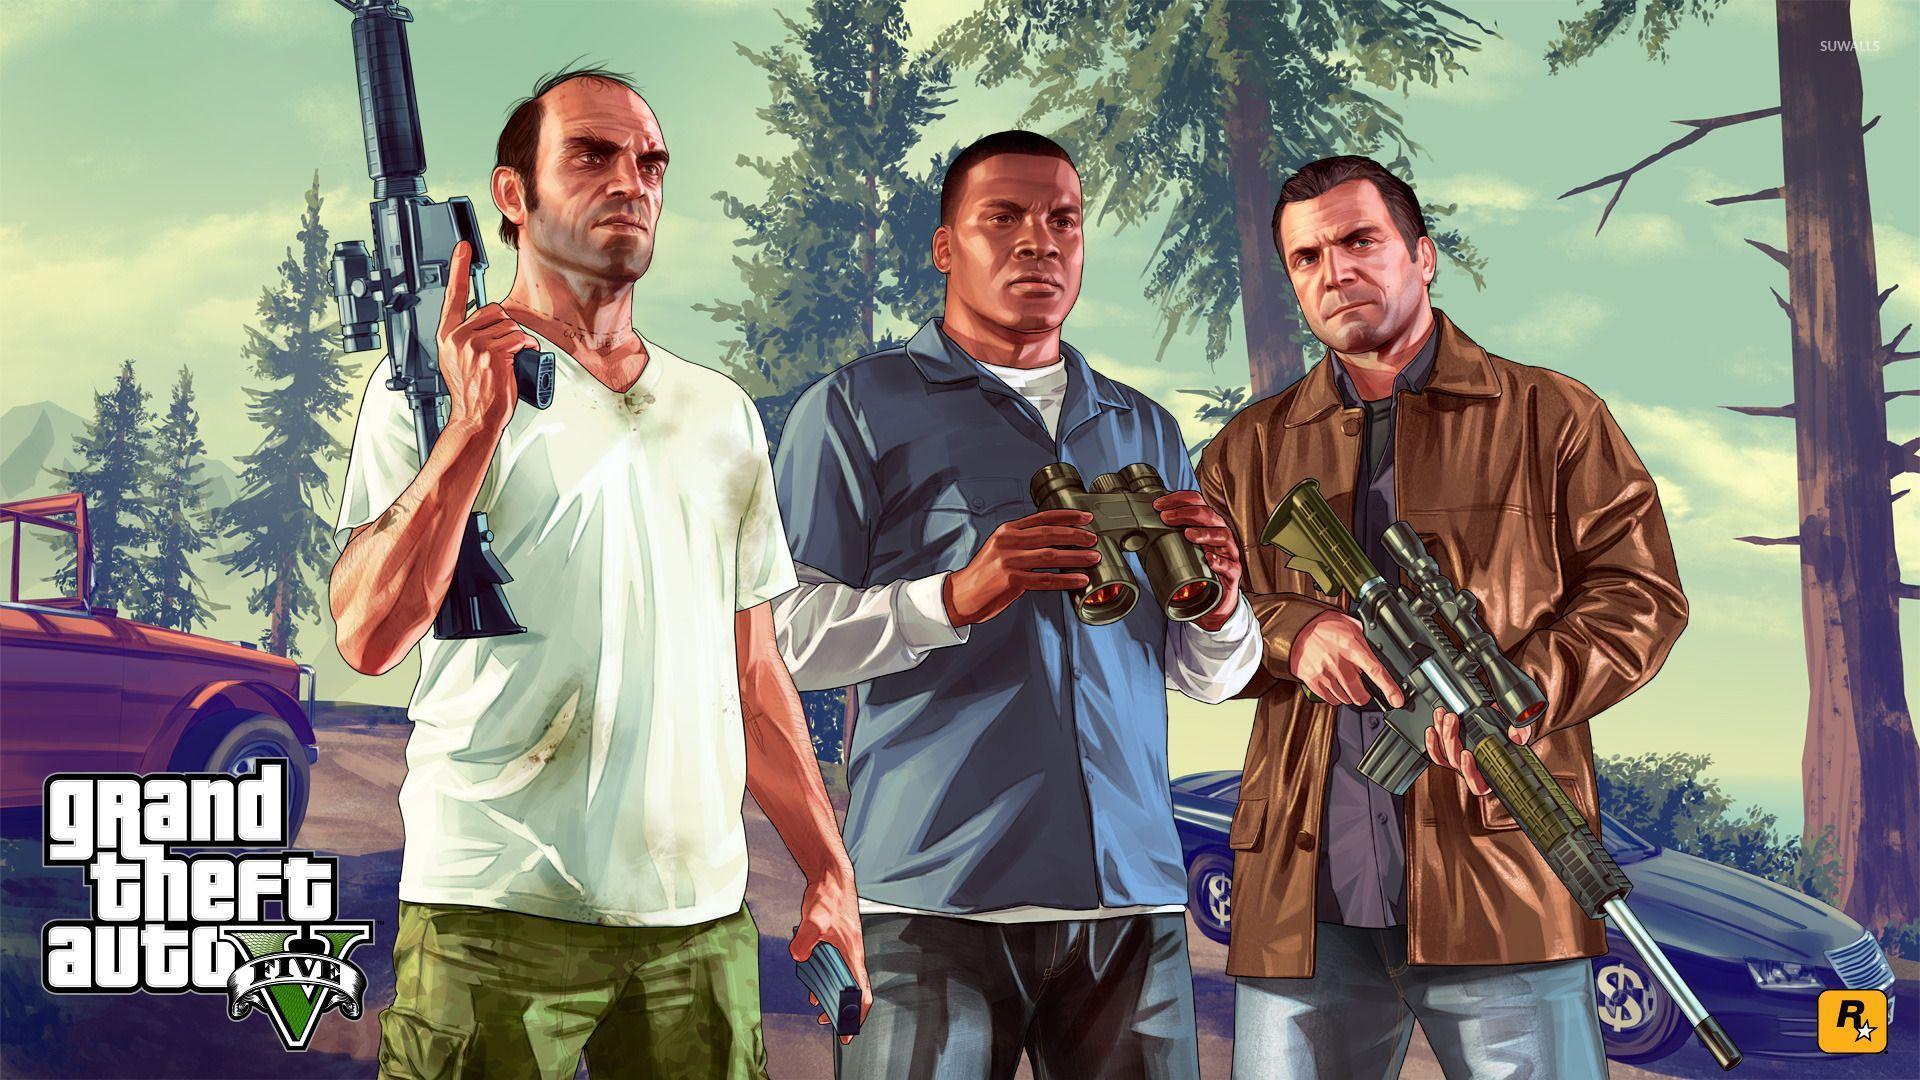 Trevor Theft Auto V wallpaper wallpaper